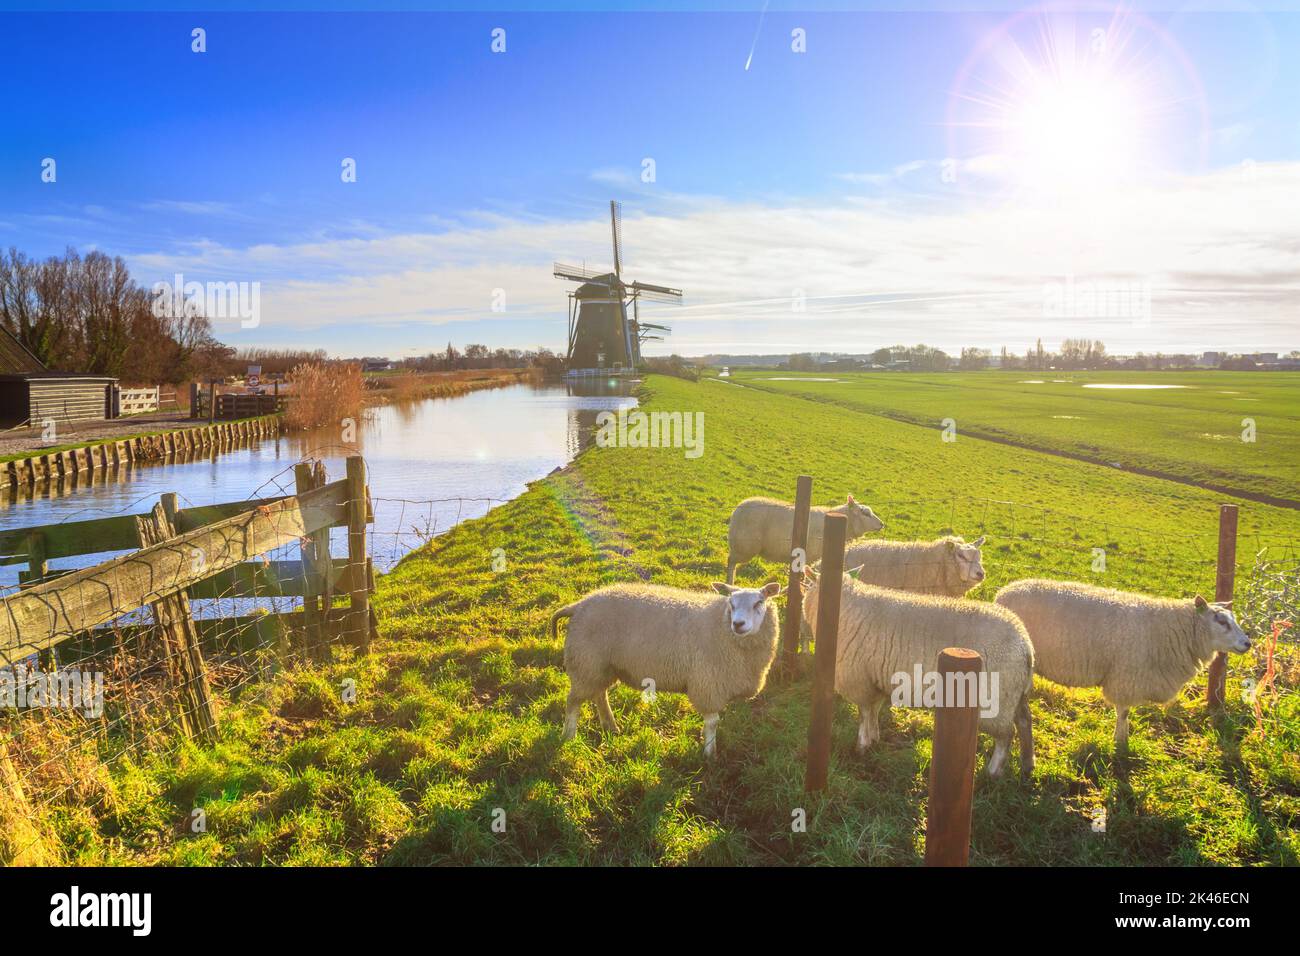 Paesaggio rurale - Vista di un gregge di pecore sullo sfondo dei mulini in una giornata di sole, i Paesi Bassi Foto Stock